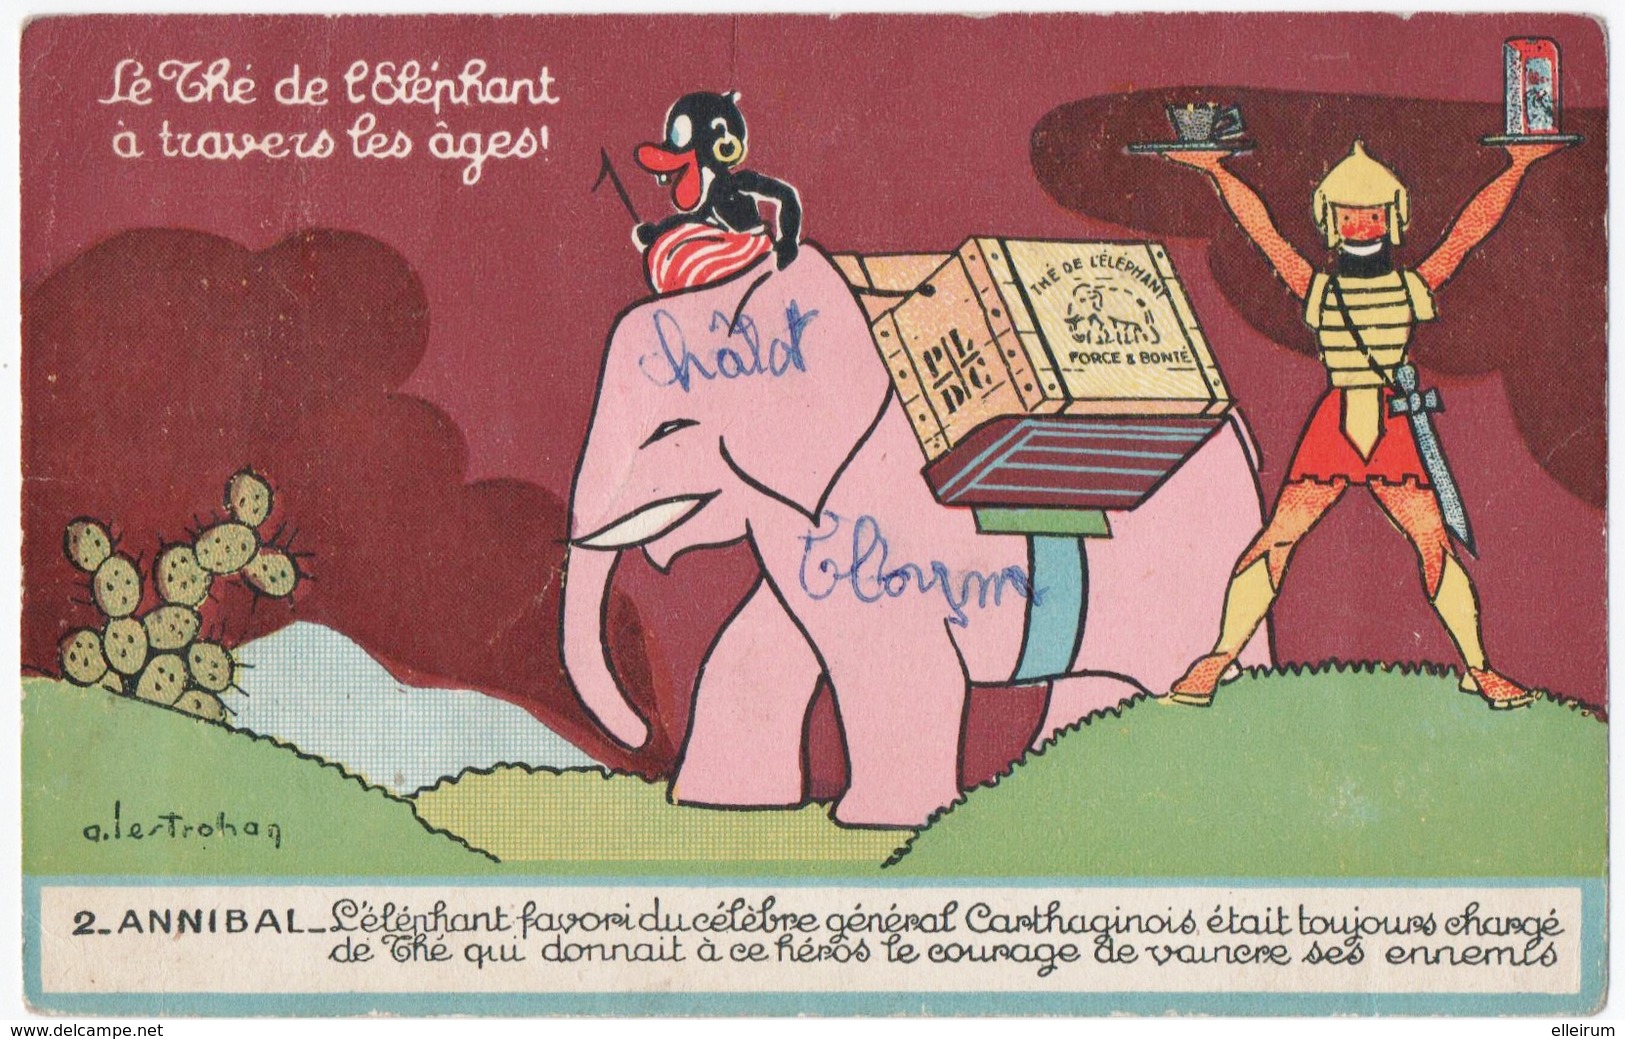 PUBLICITE. LE THE L'ELEPHANT à TRAVERS Les AGES. ANNIBAL. 1958. - Publicité